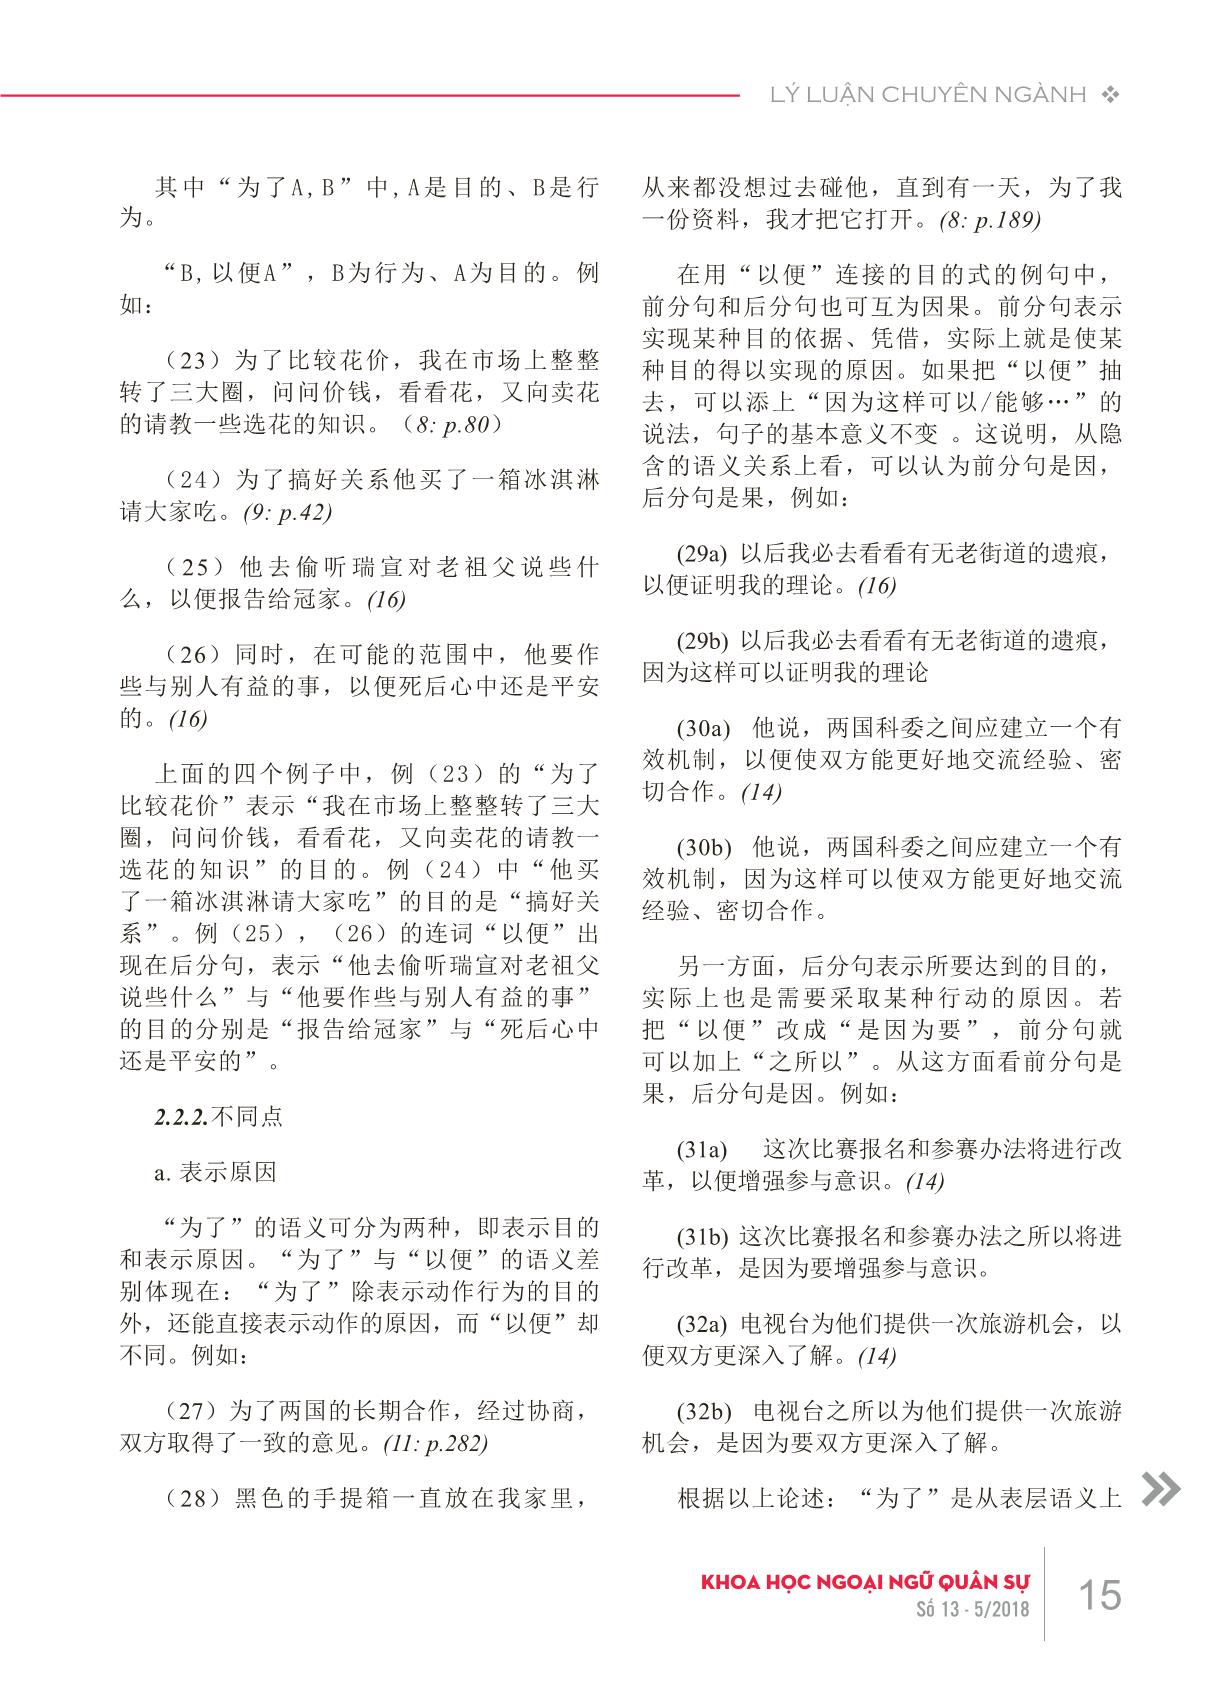 Phân biệt “weile” và “yibian” trong tiếng Hán hiện đại trang 5